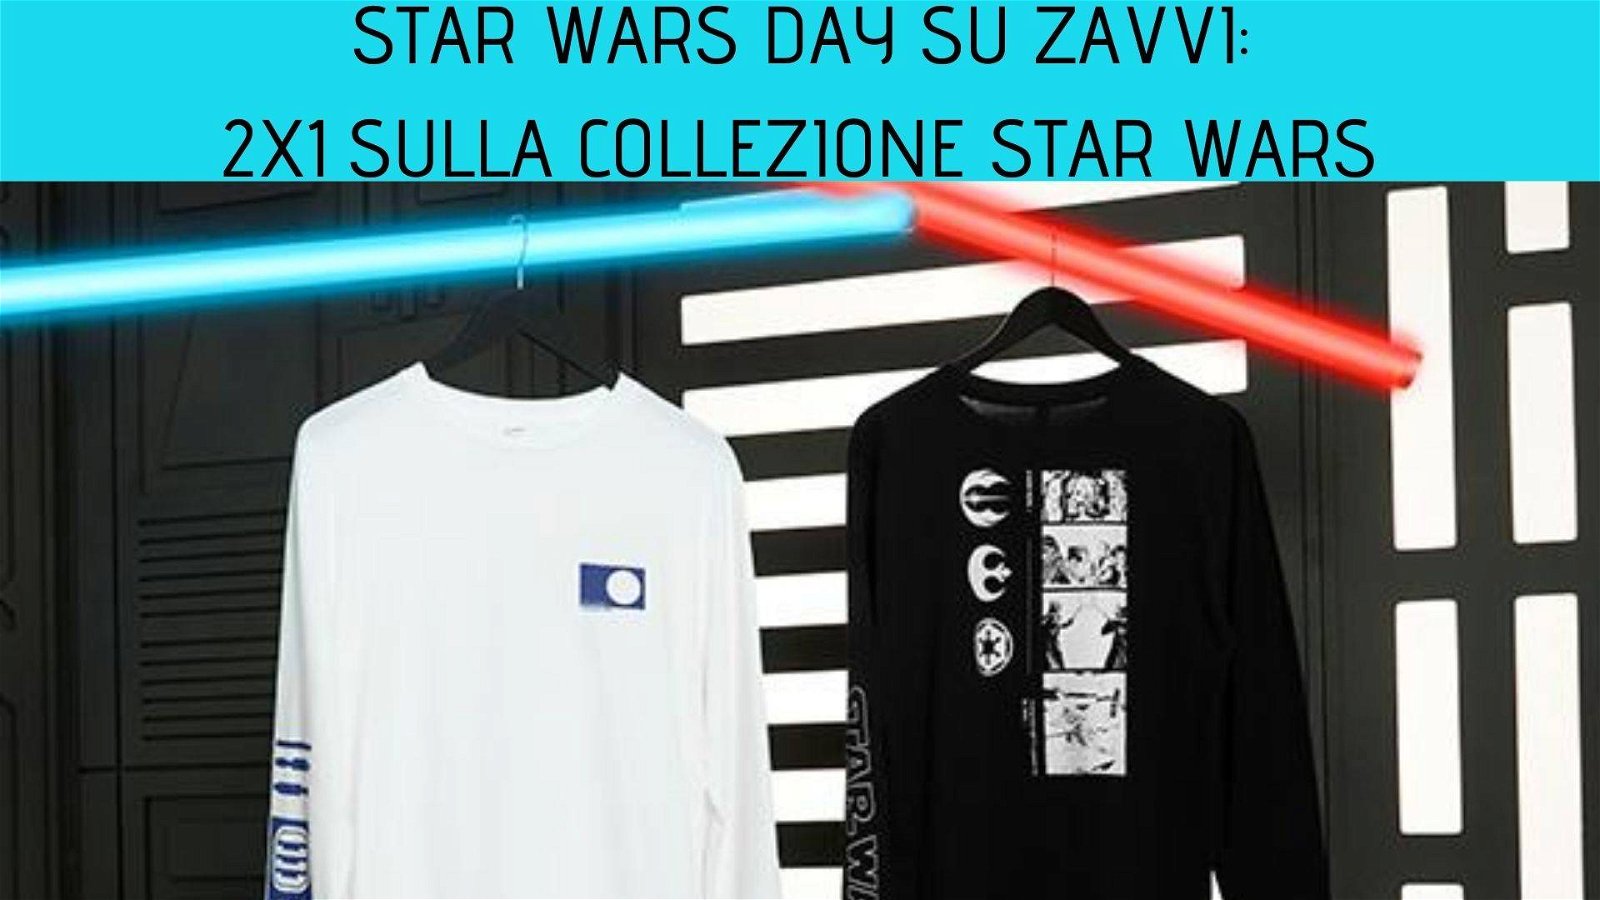 Immagine di 2x1 sulle t-shirt della collezione Star Wars su Zavvi!